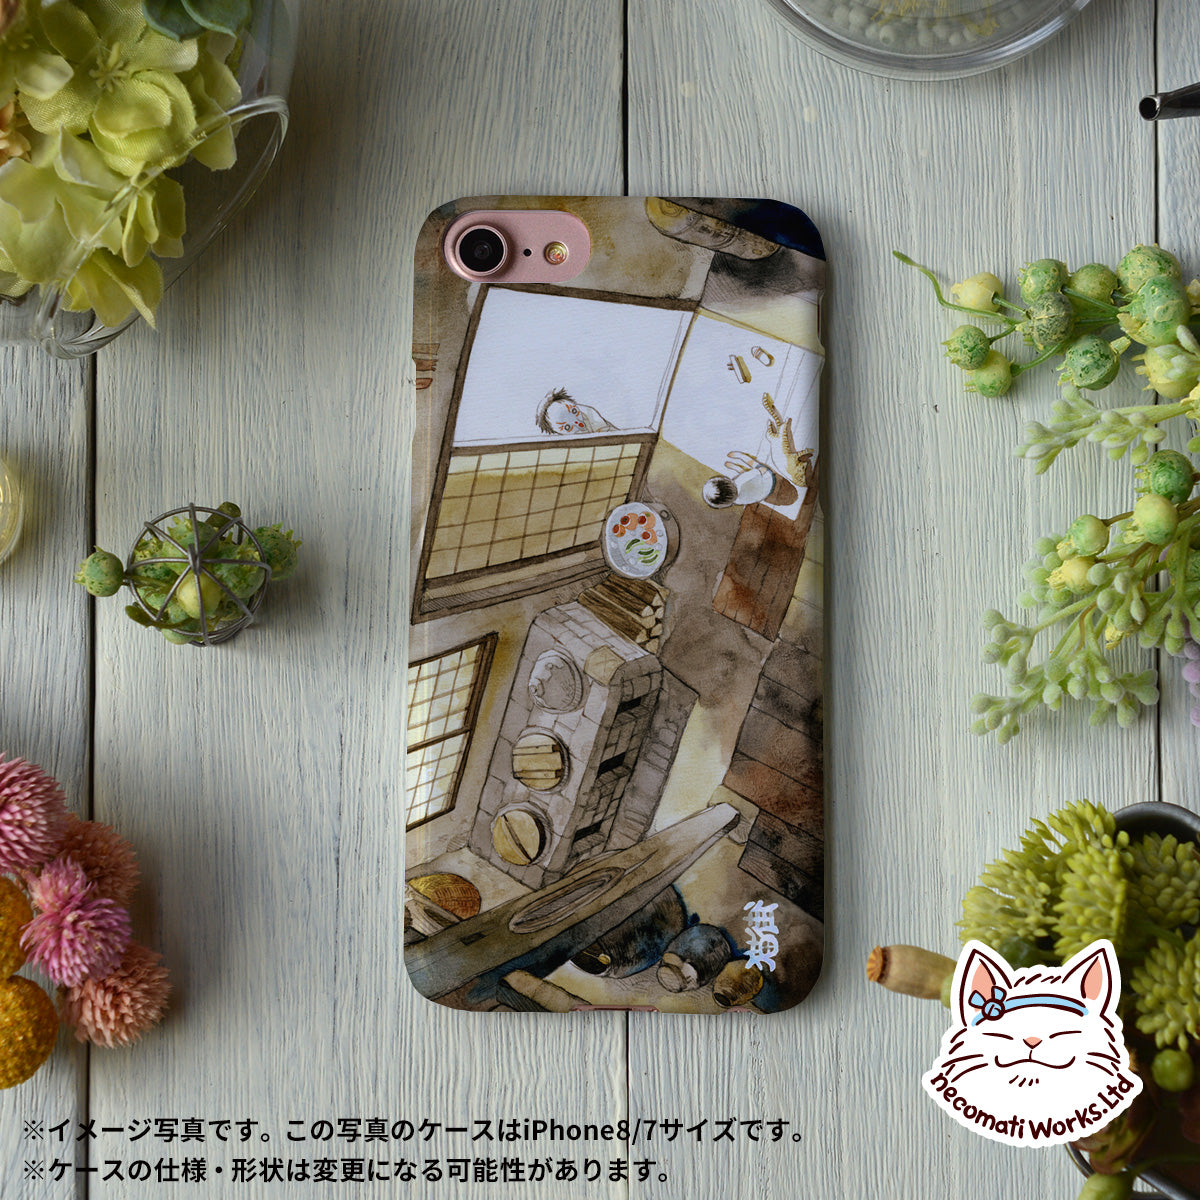 猫街製作所ブランドのデザイン画を印刷したハードケース「夏休み」のイメージ写真です。機種はiPhone8/7相当です。